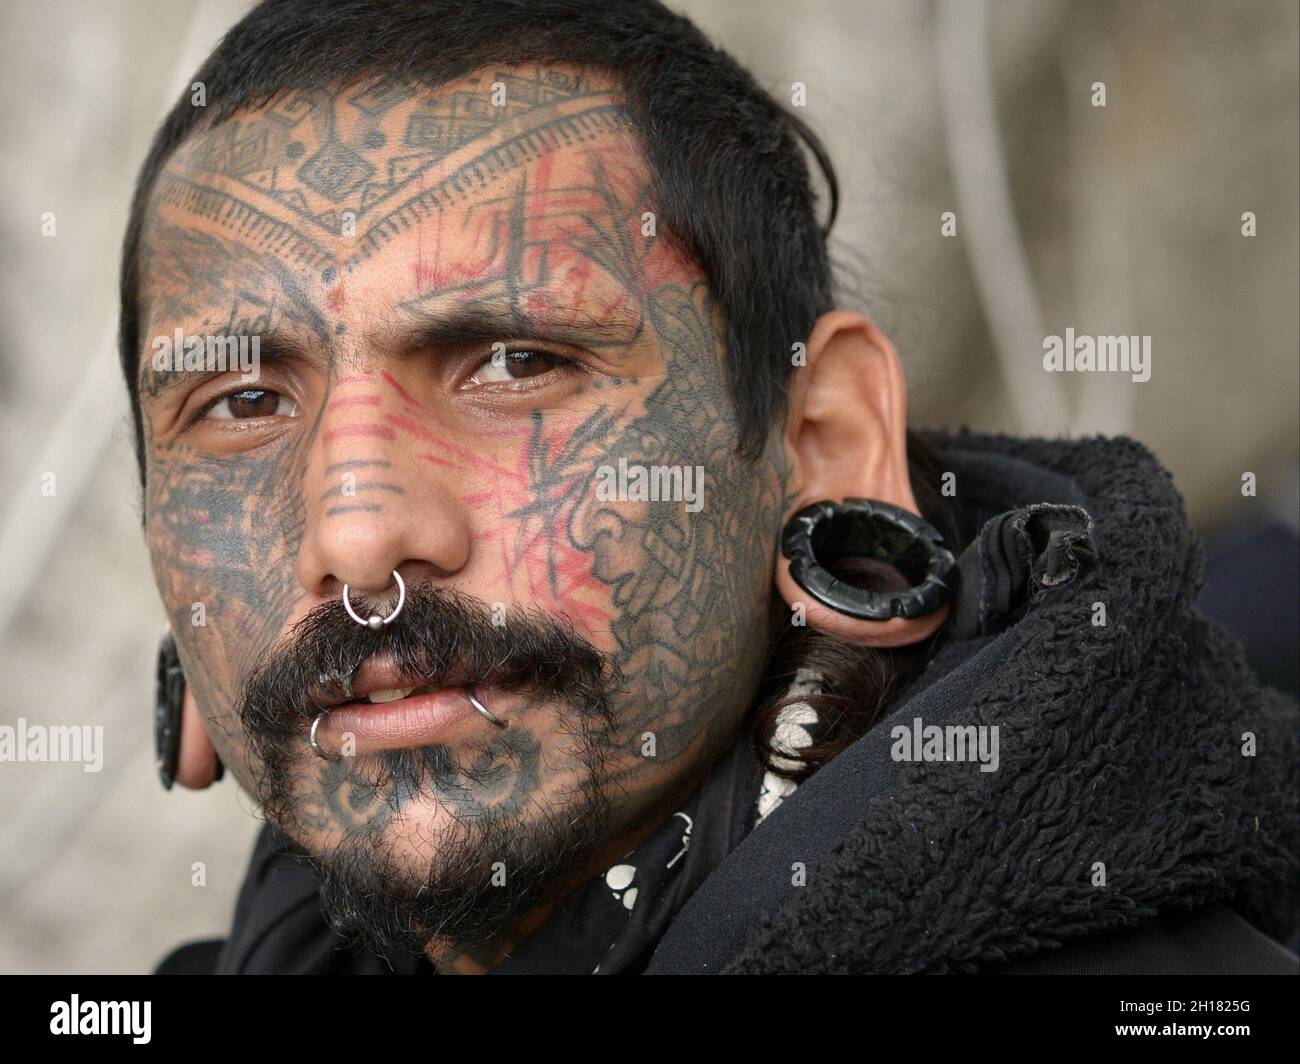 Un jeune homme mexicain aux tatouages du visage, aux piercings des lèvres, au perçage de septum et aux lobes d'oreille jaugés avec des bouchons d'oreille de grande taille regarde le spectateur. Banque D'Images